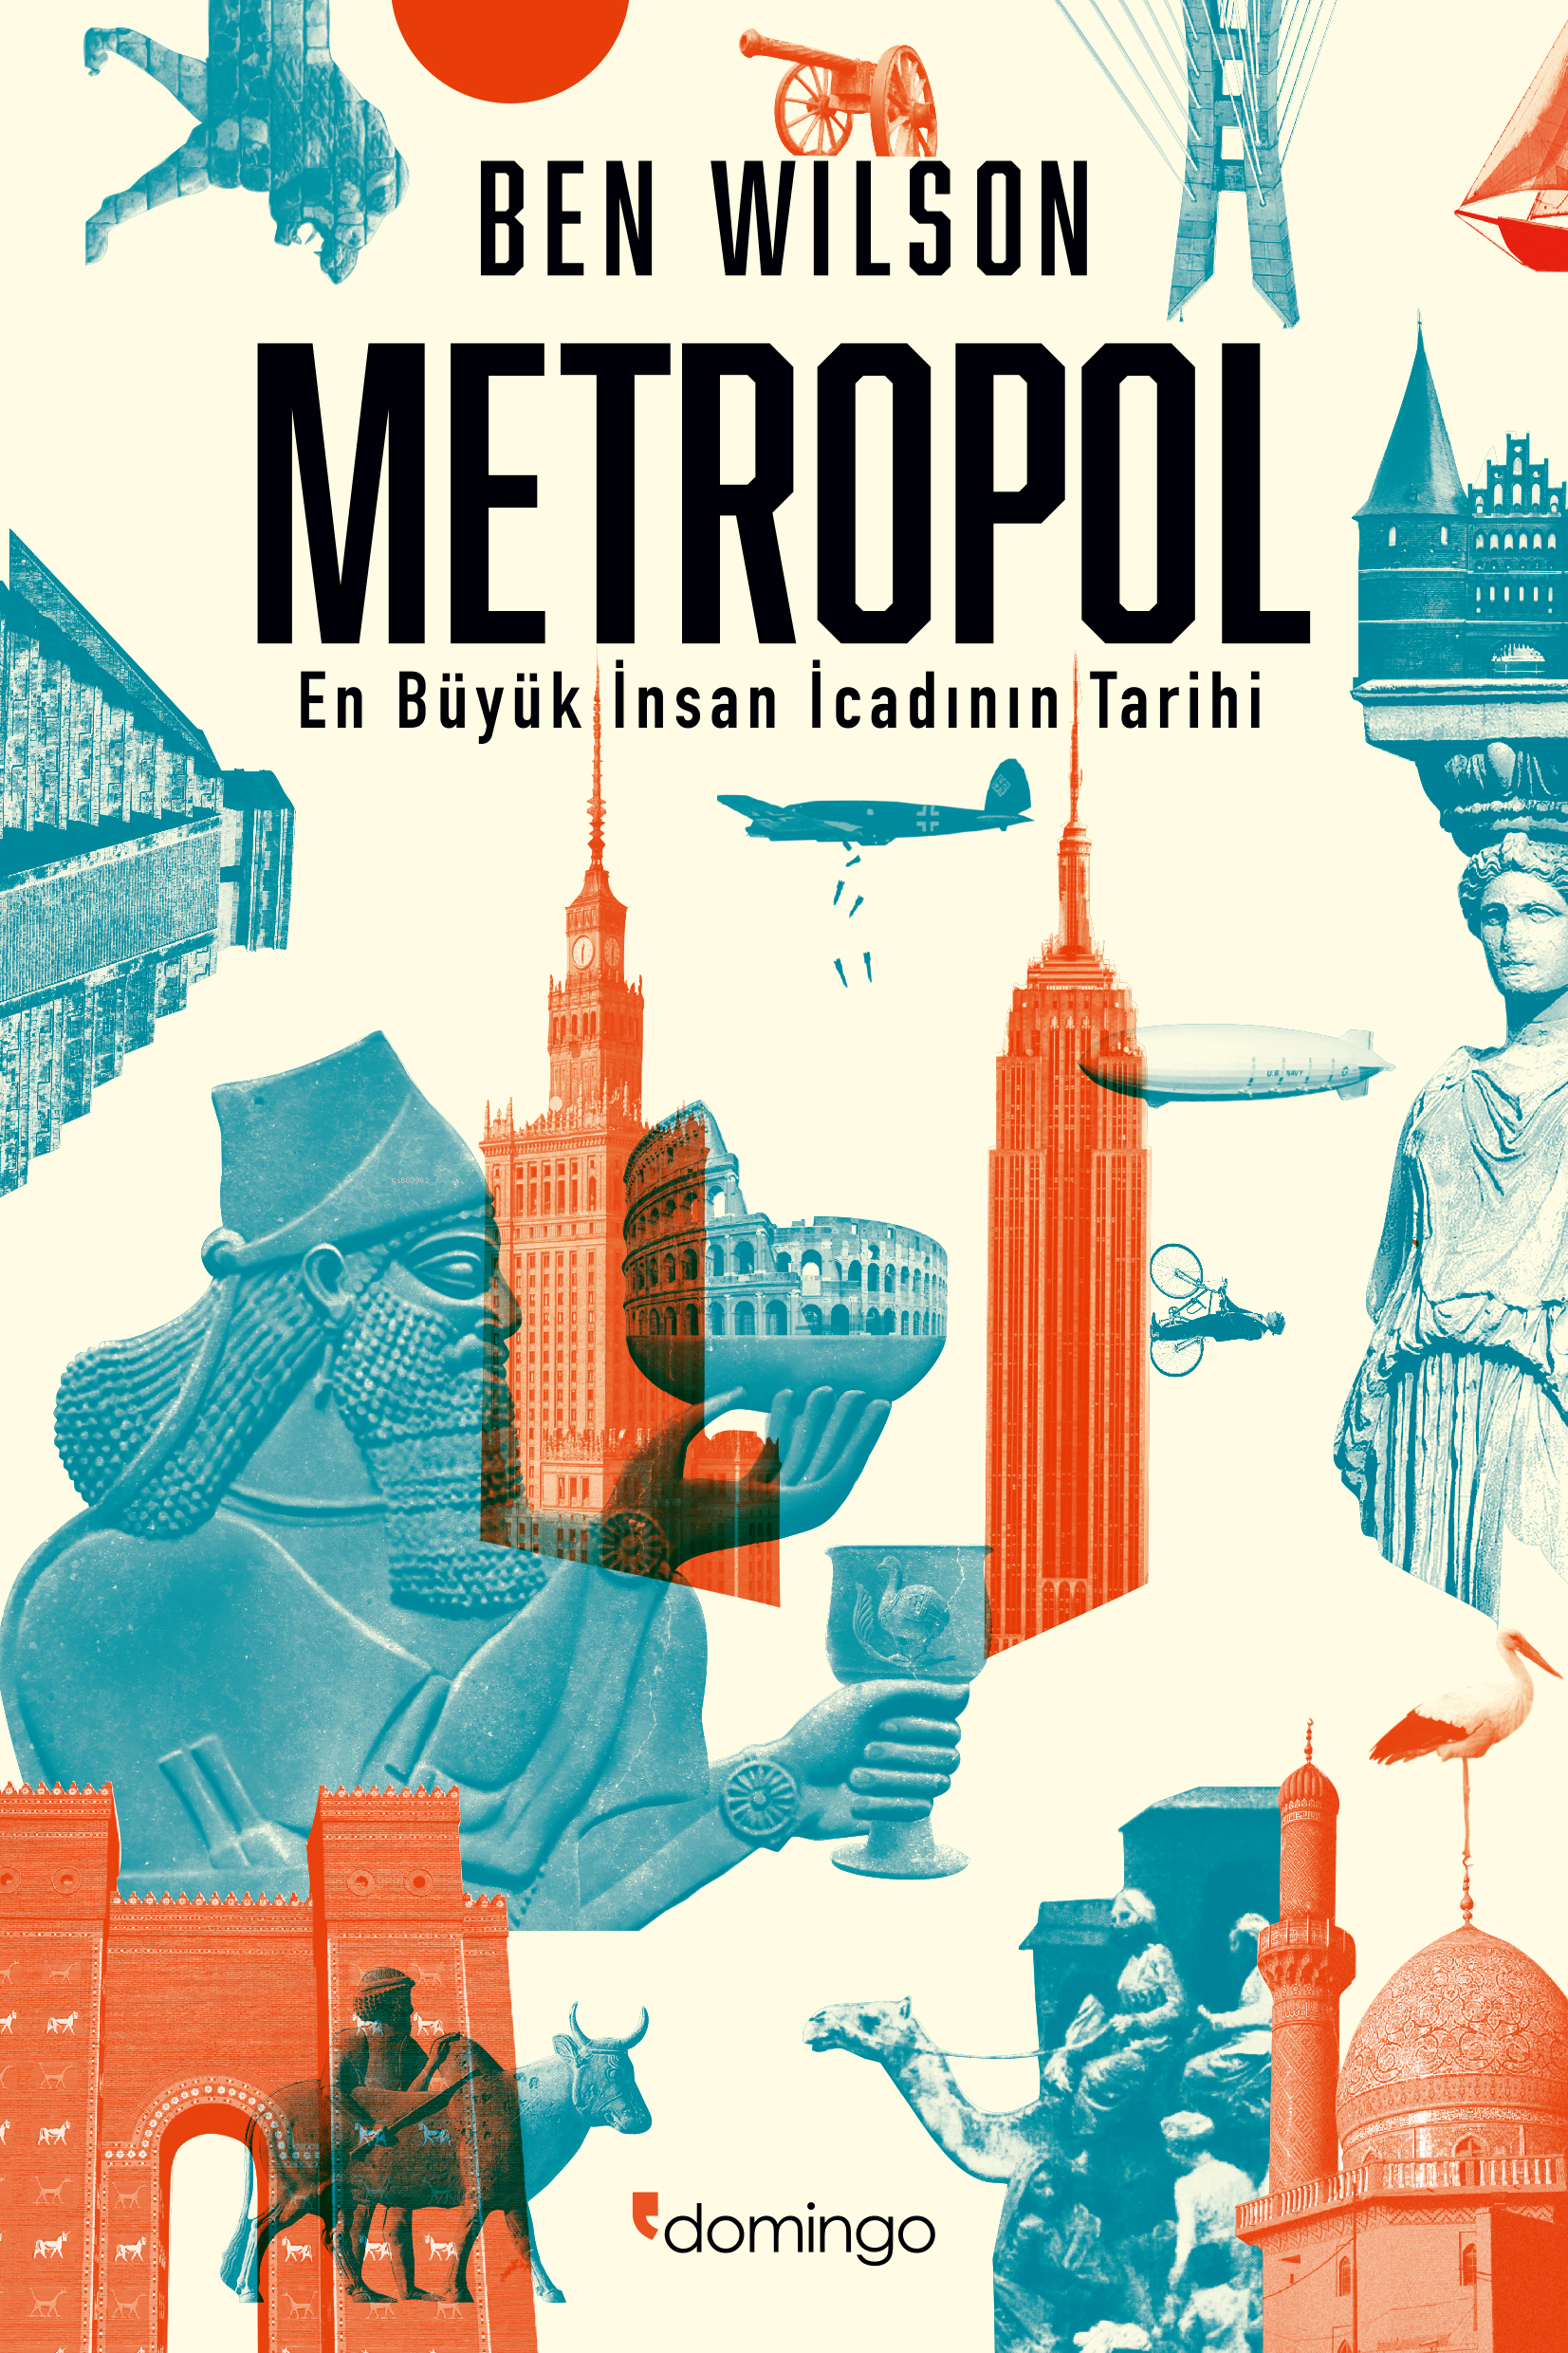 Metropol: En Büyük İnsan İcadının Tarihi